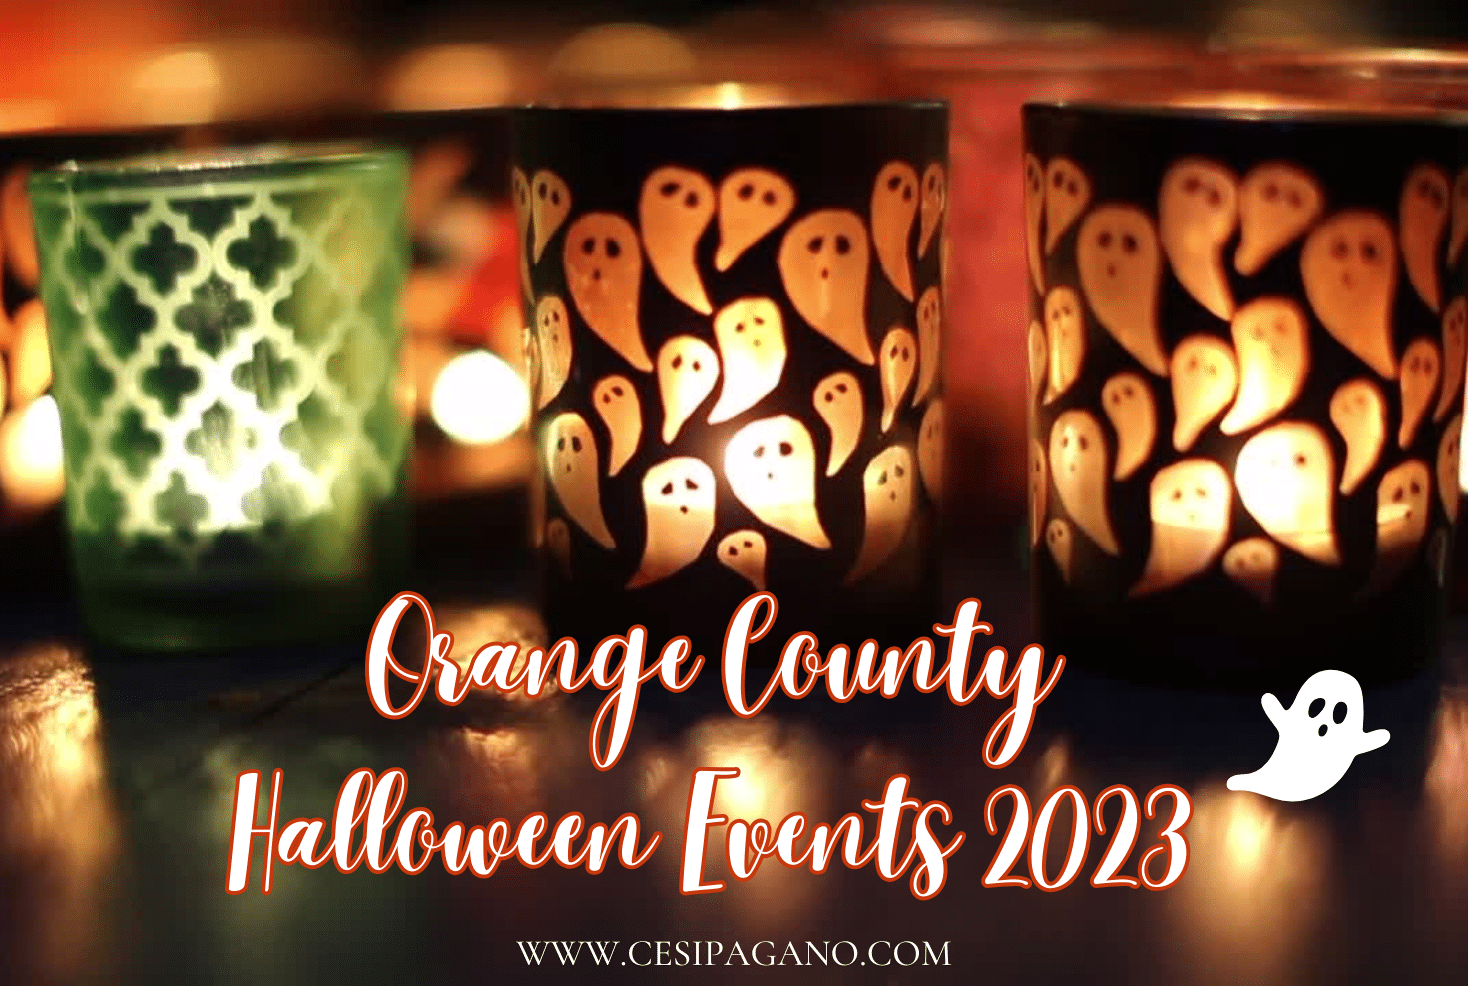 Orange County Halloween Events 2023